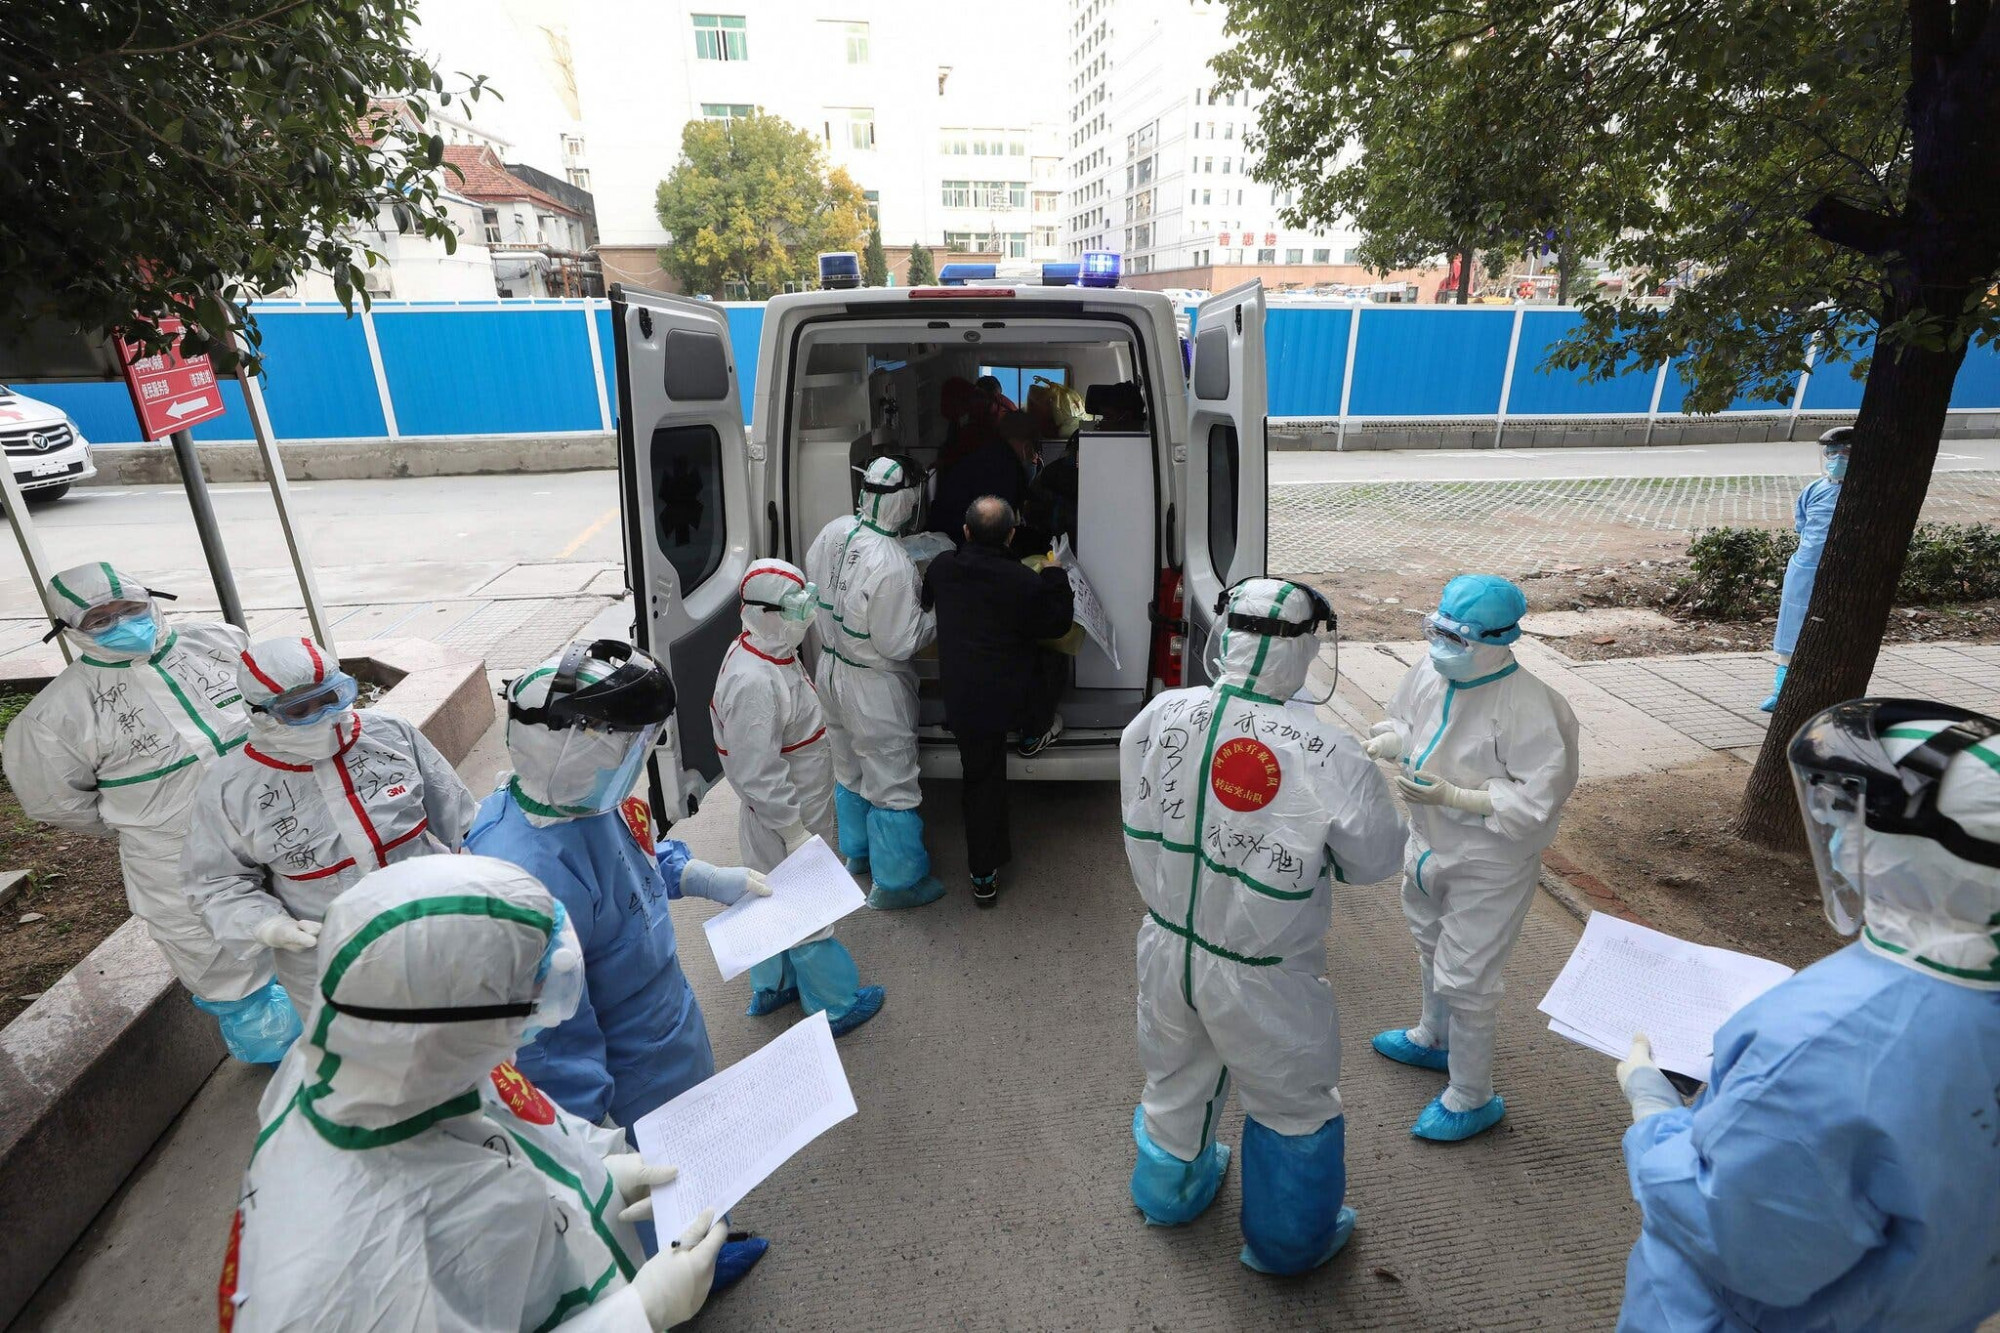 Nhân viên y tế đã hỗ trợ một bệnh nhân COVID-19 vào xe cấp cứu ở Vũ Hán, Trung Quốc, hồi tháng 3/2020.